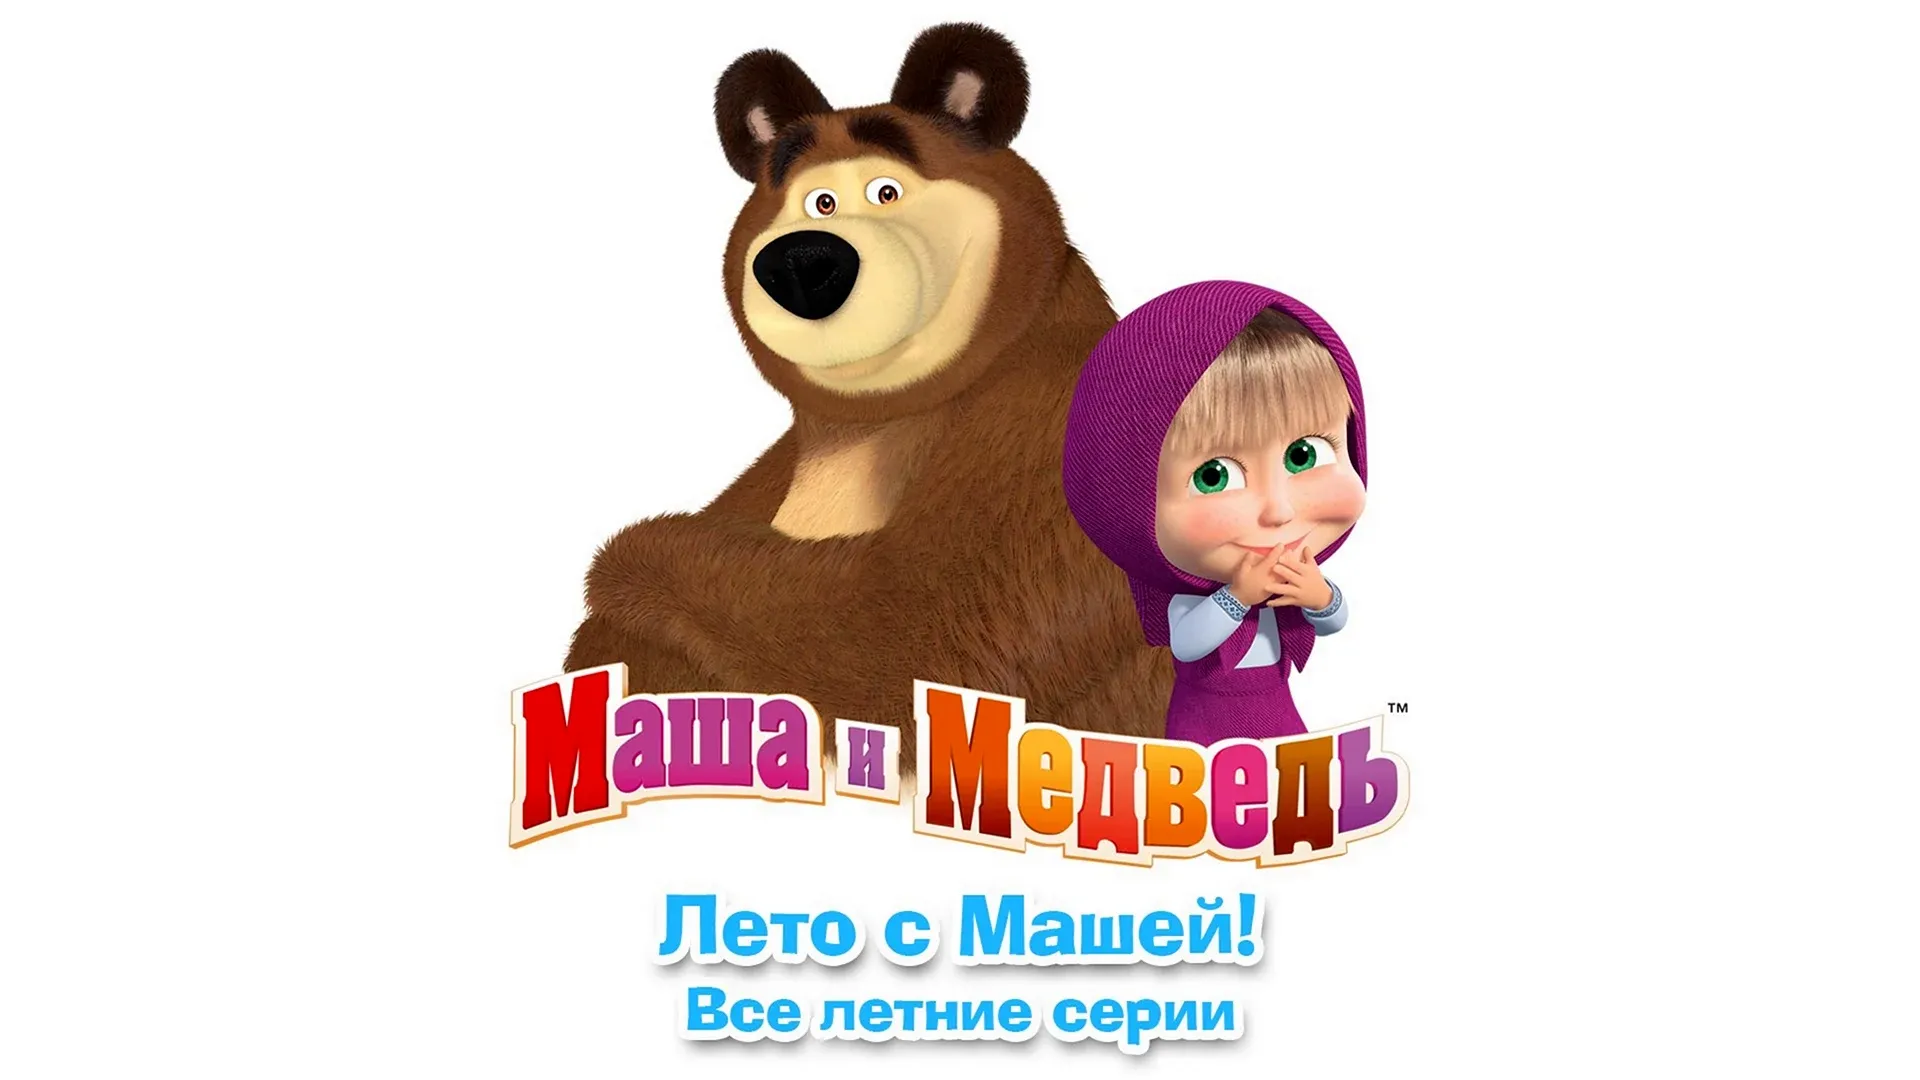 Сборник мультиков про машу медведя. Маша и медведь. Маша и медведь логотип. Маша и медведь надпись. Маша и медведь на белом фоне.